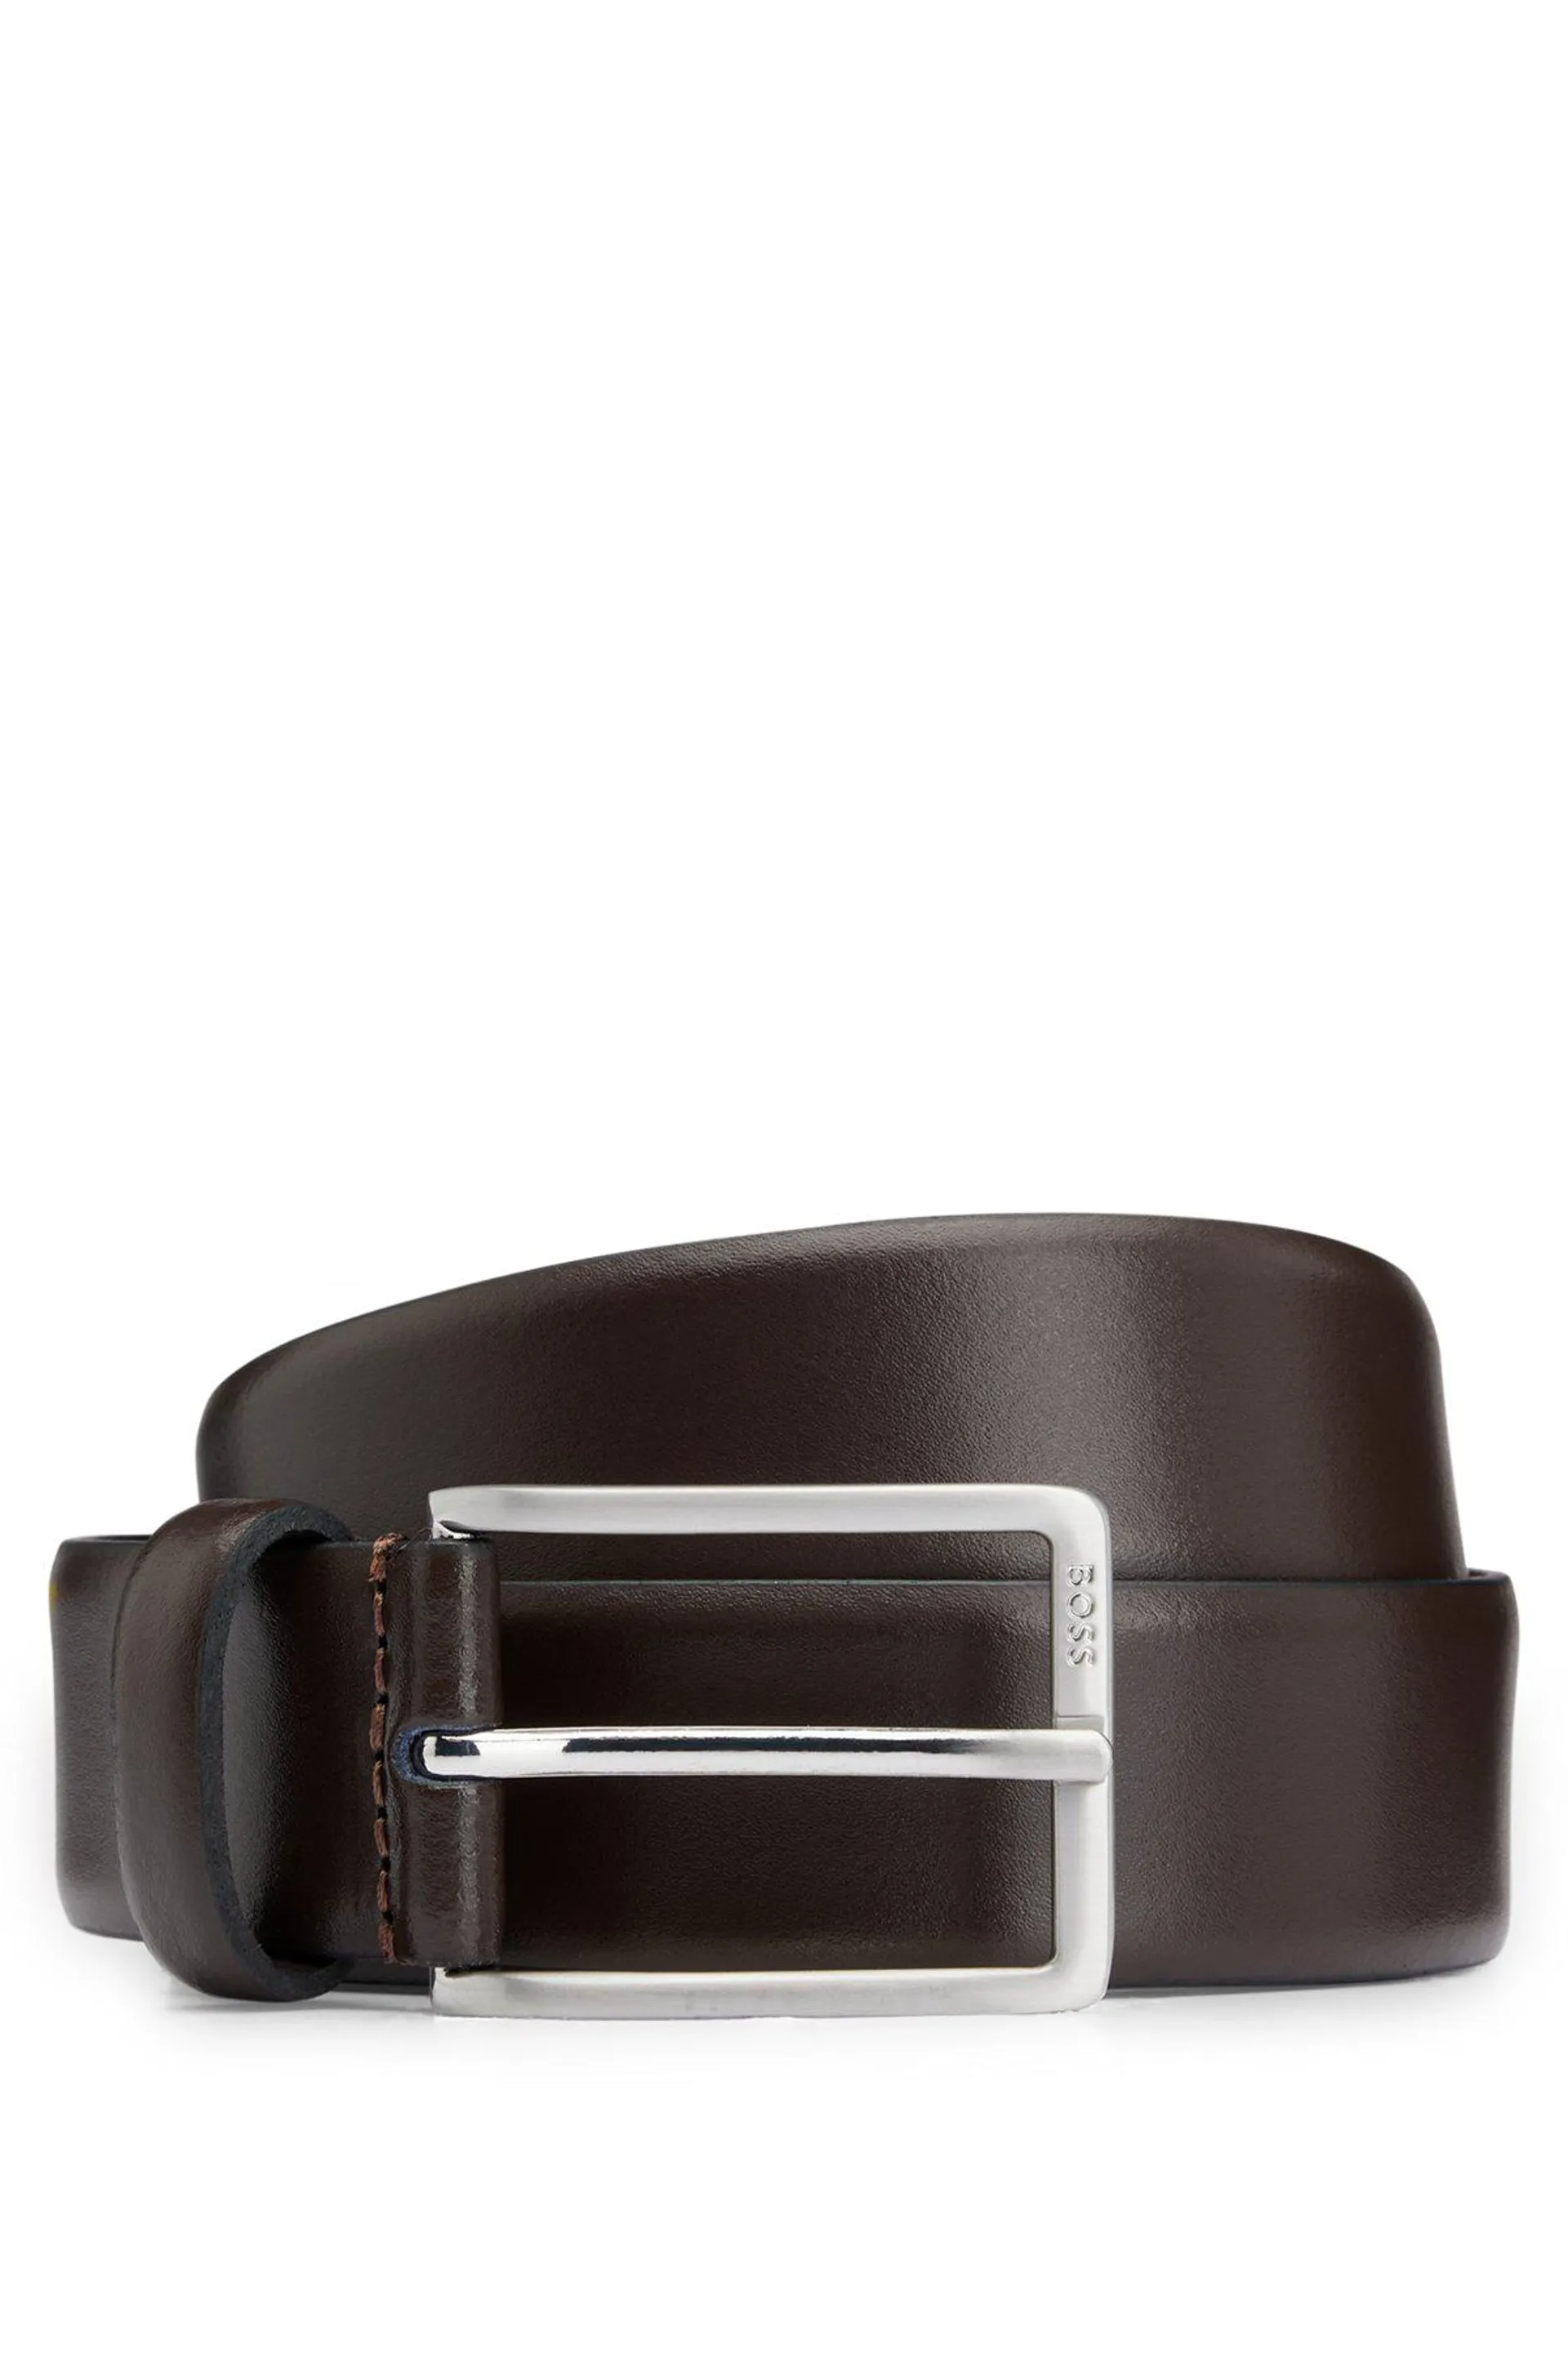 Cinturón de piel italiana con hebilla con logo grabado